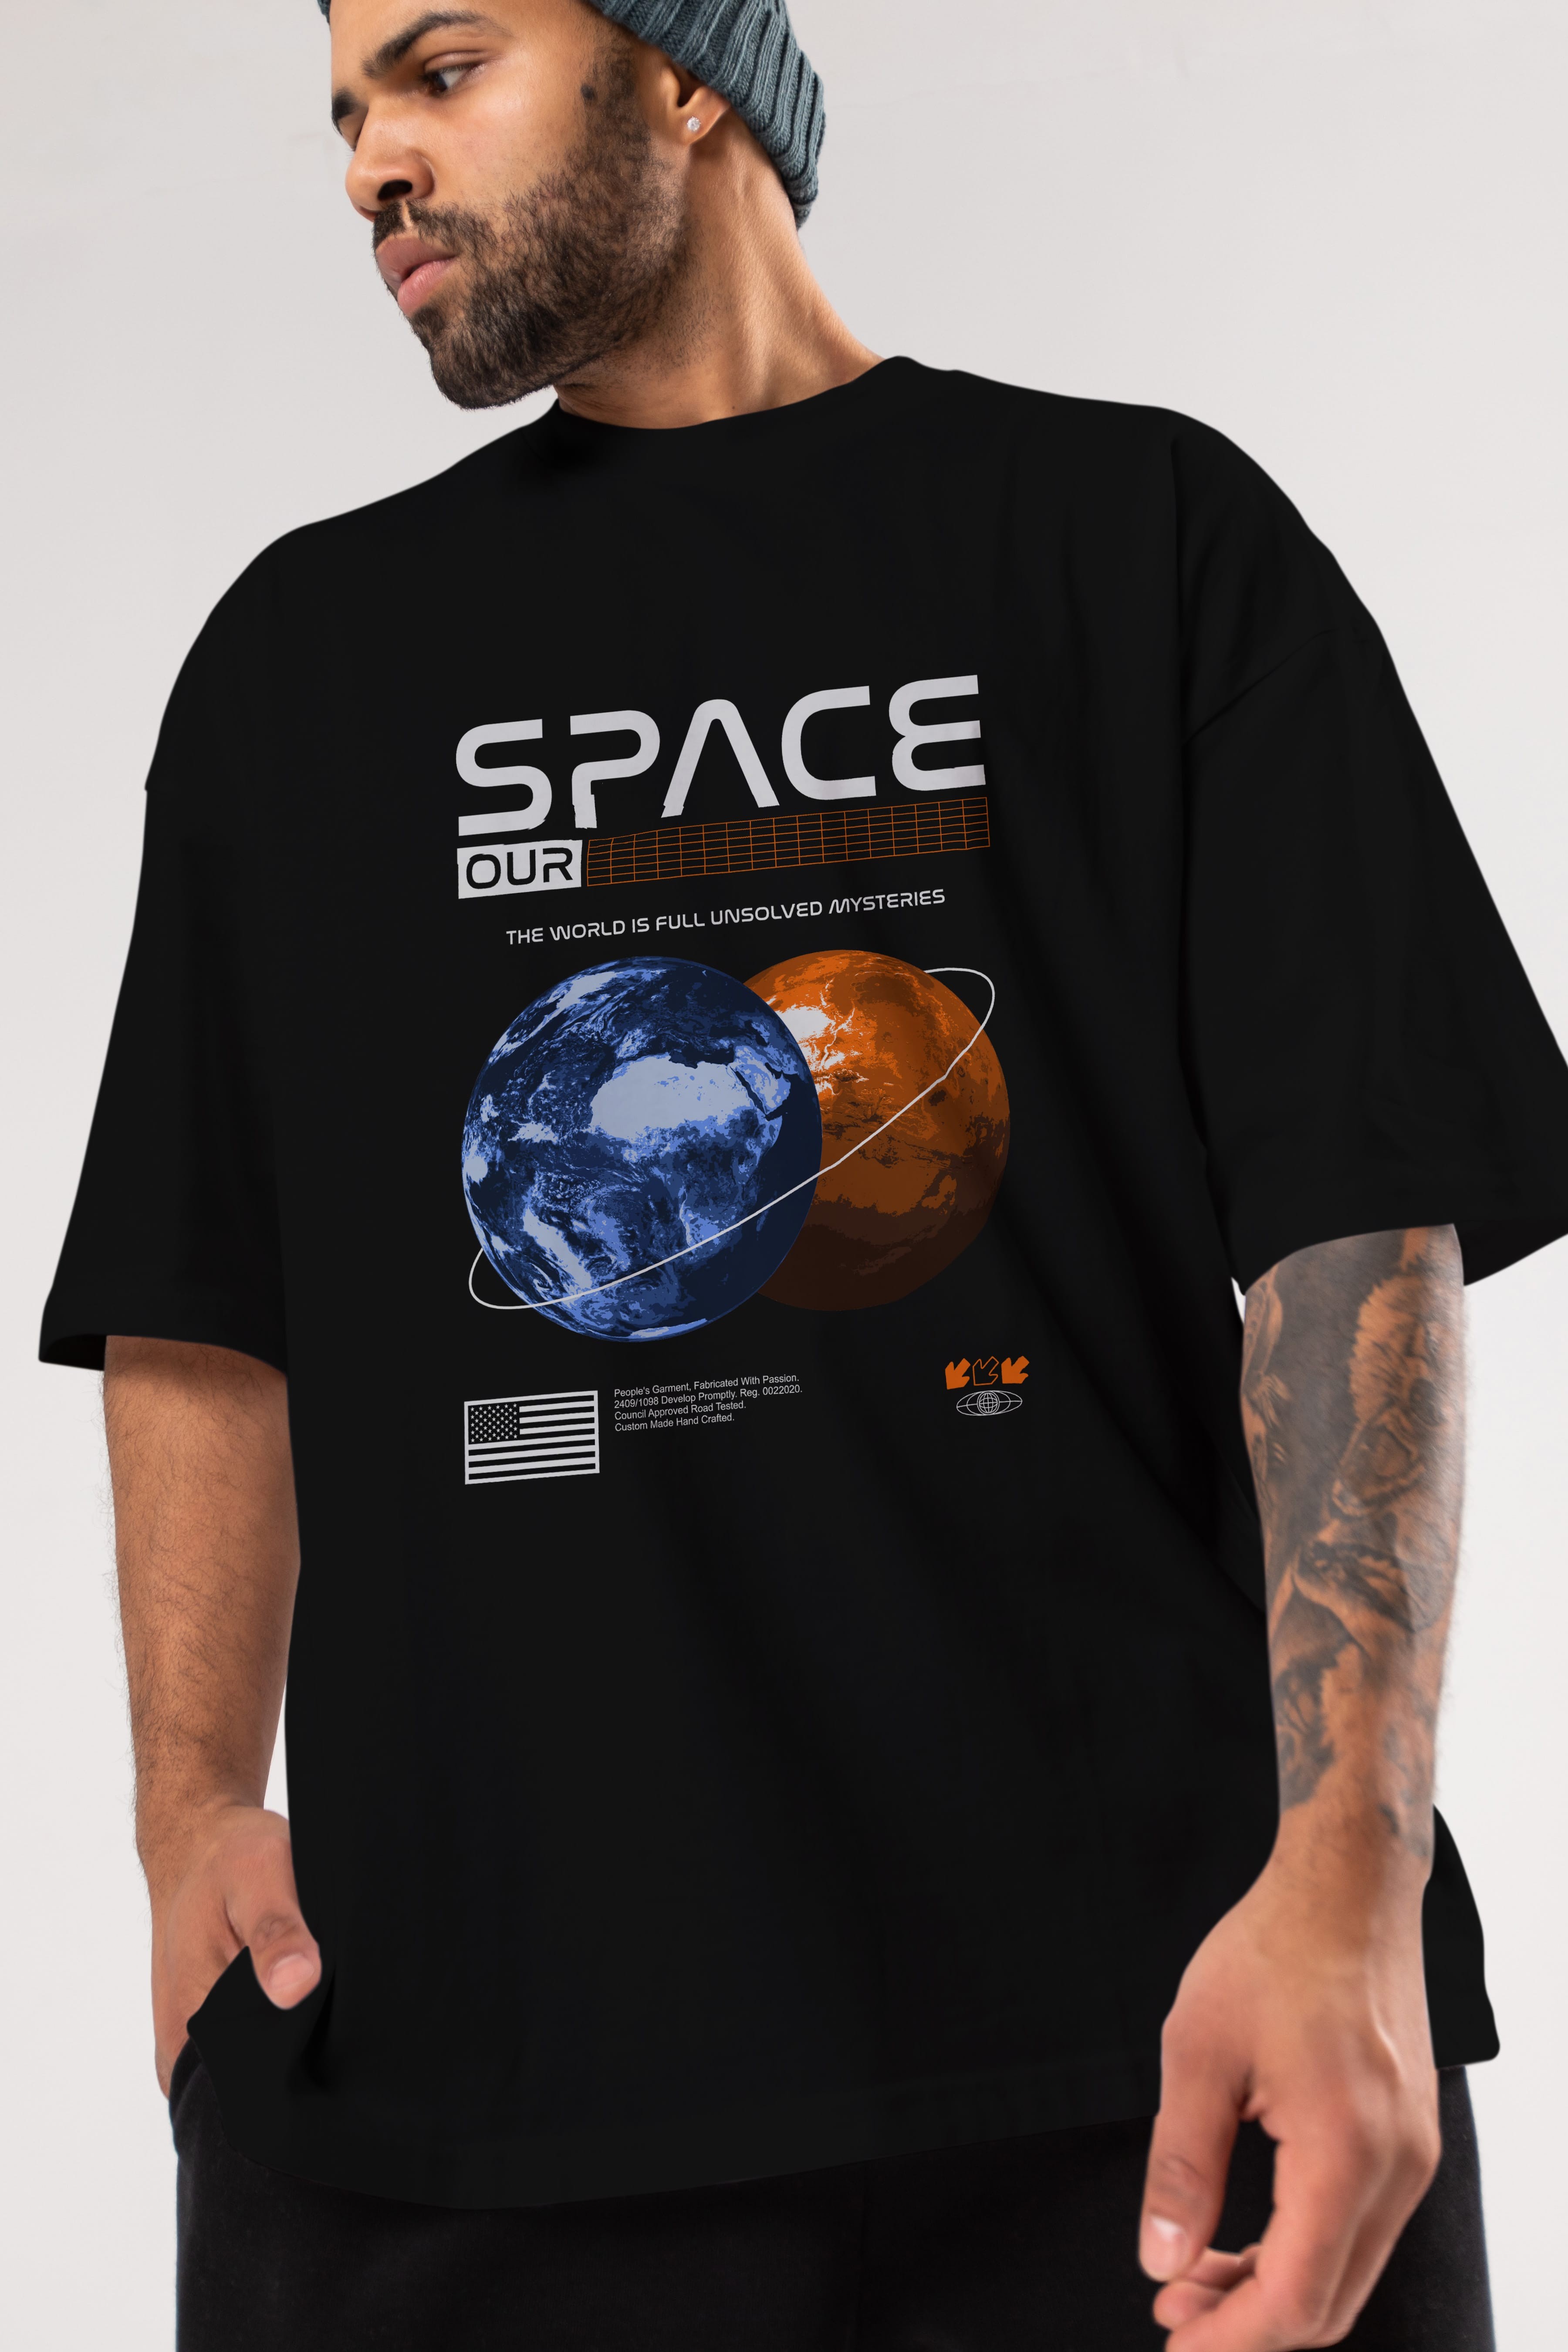 Space Our Ön Baskılı Oversize t-shirt Erkek Kadın Unisex